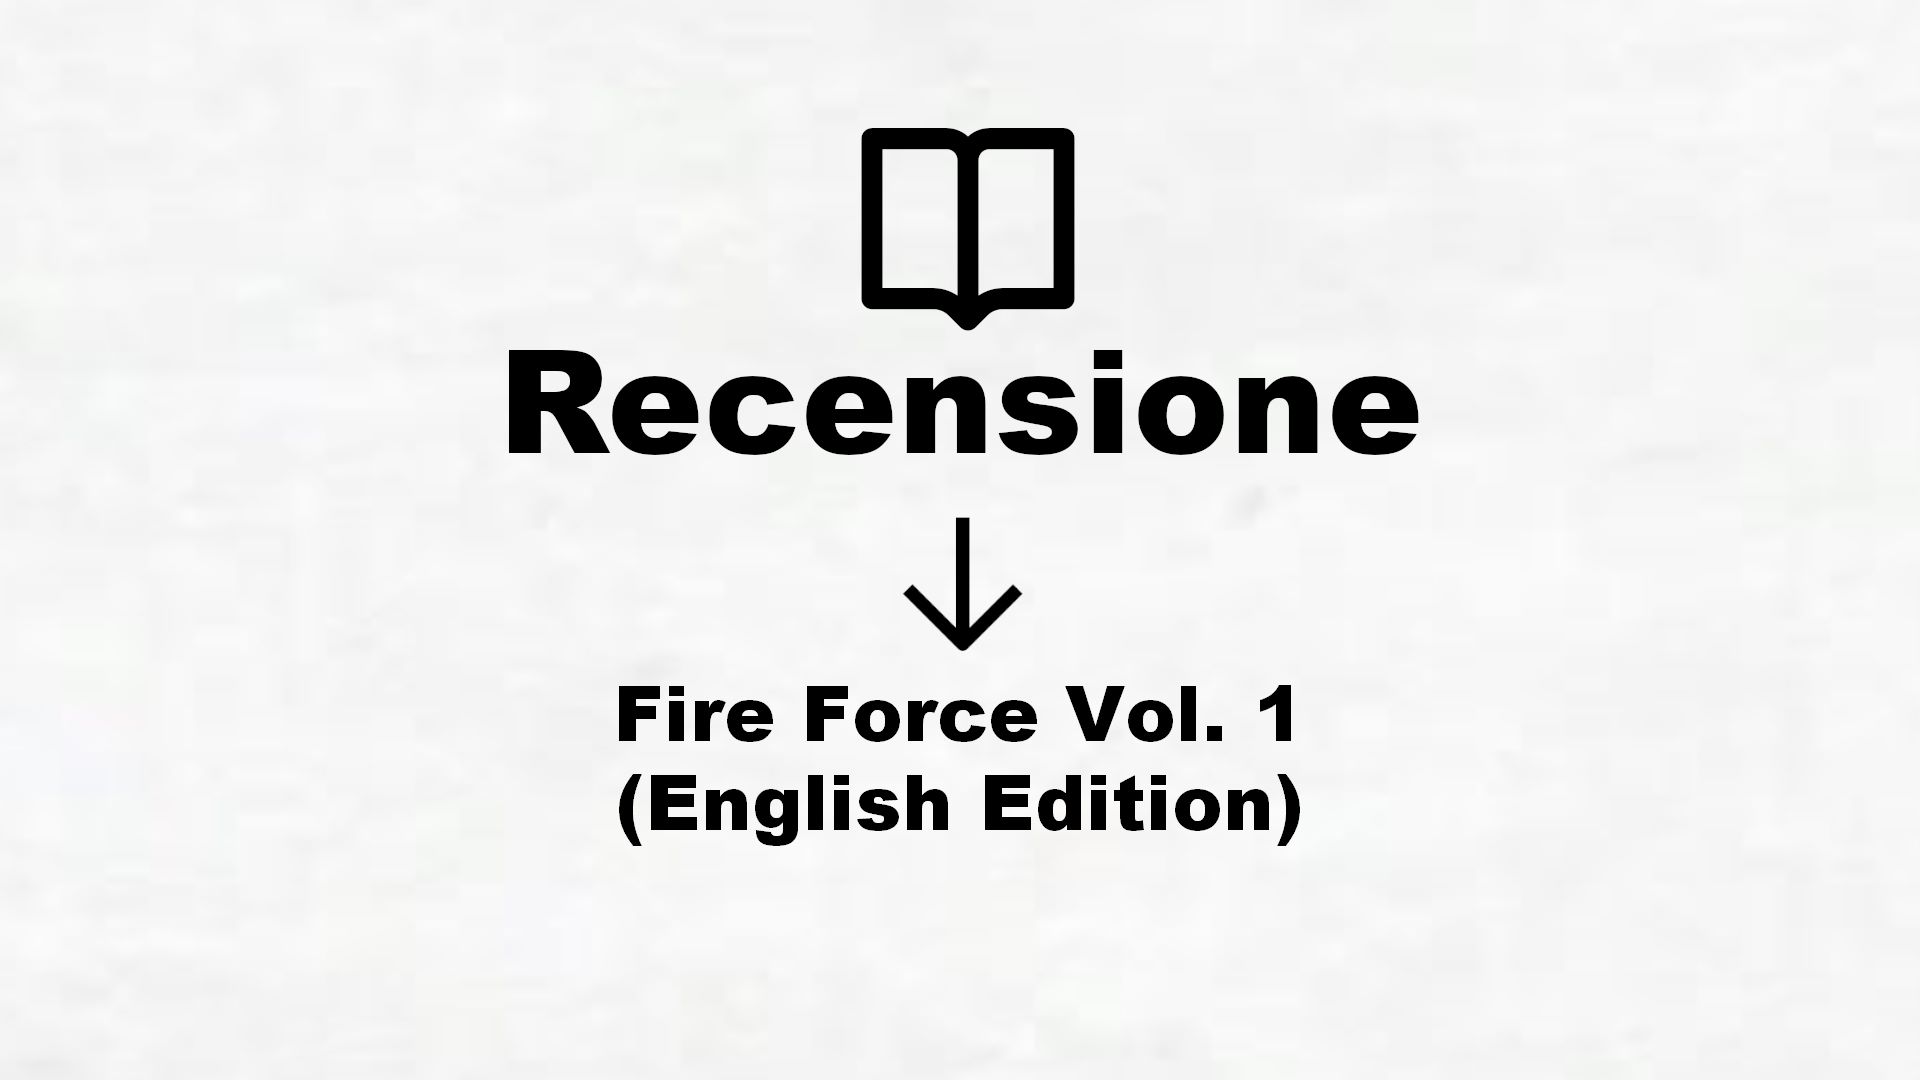 Fire Force Vol. 1 (English Edition) – Recensione Libro